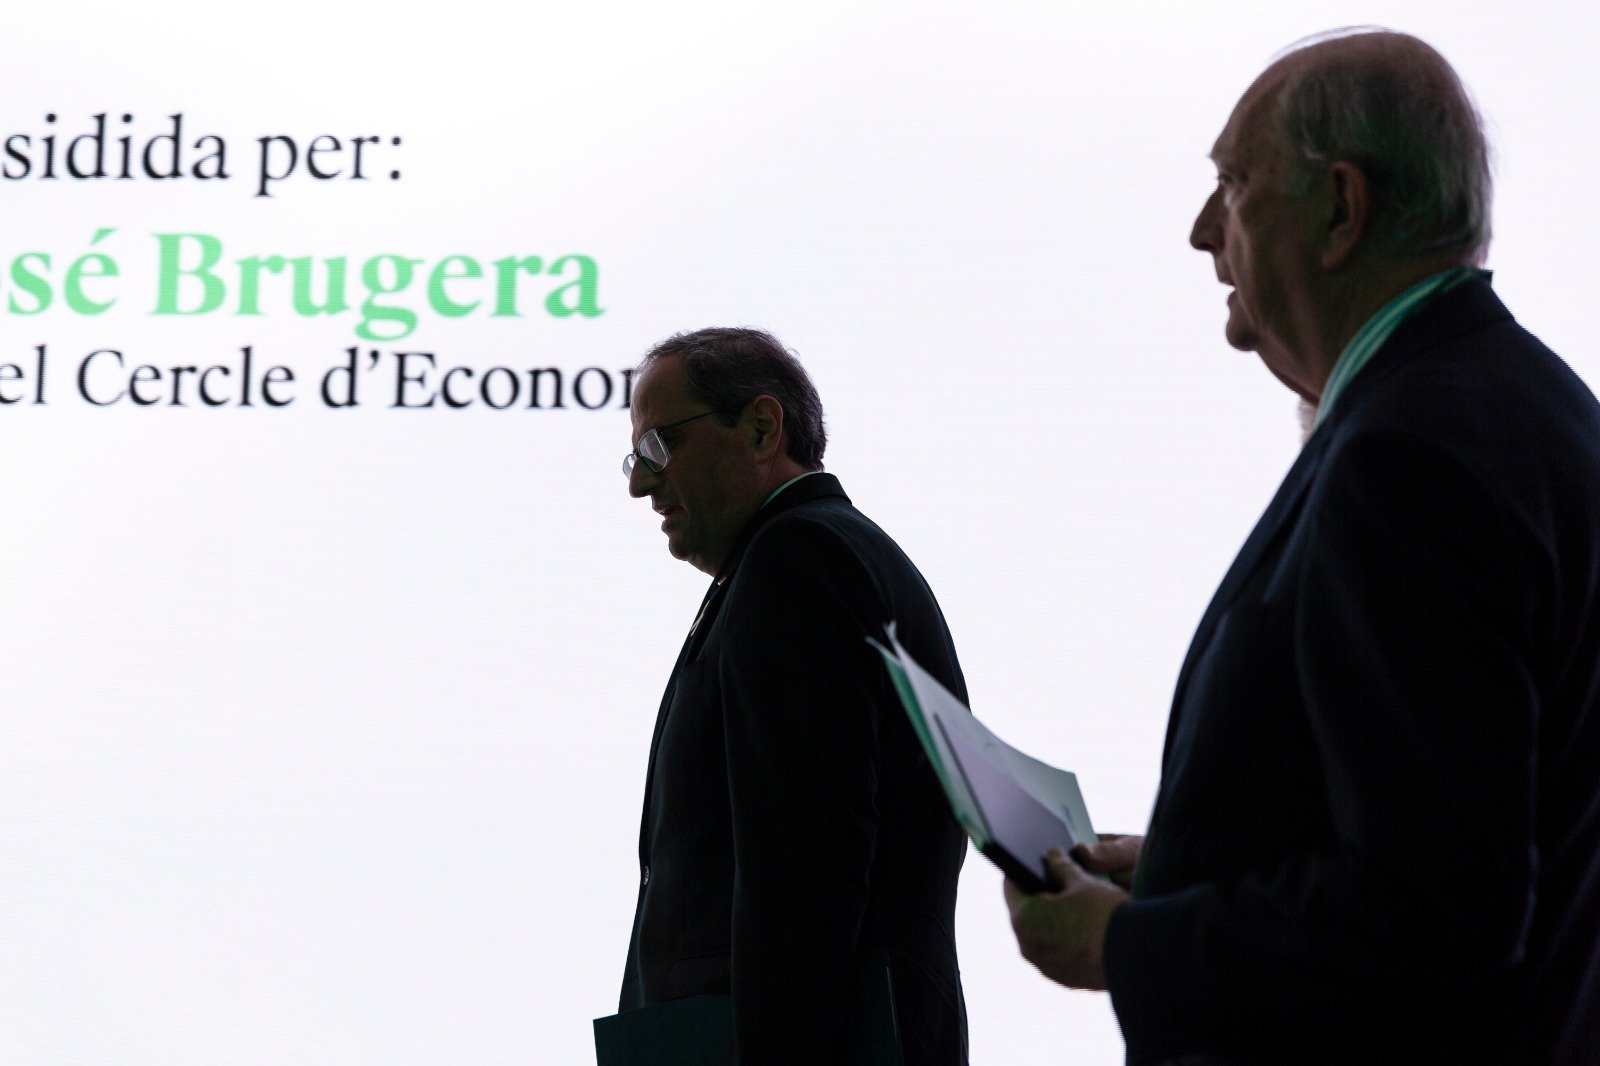 El Cercle d'Economia rep Torra a Sitges amb indiferència, fredor i ironies